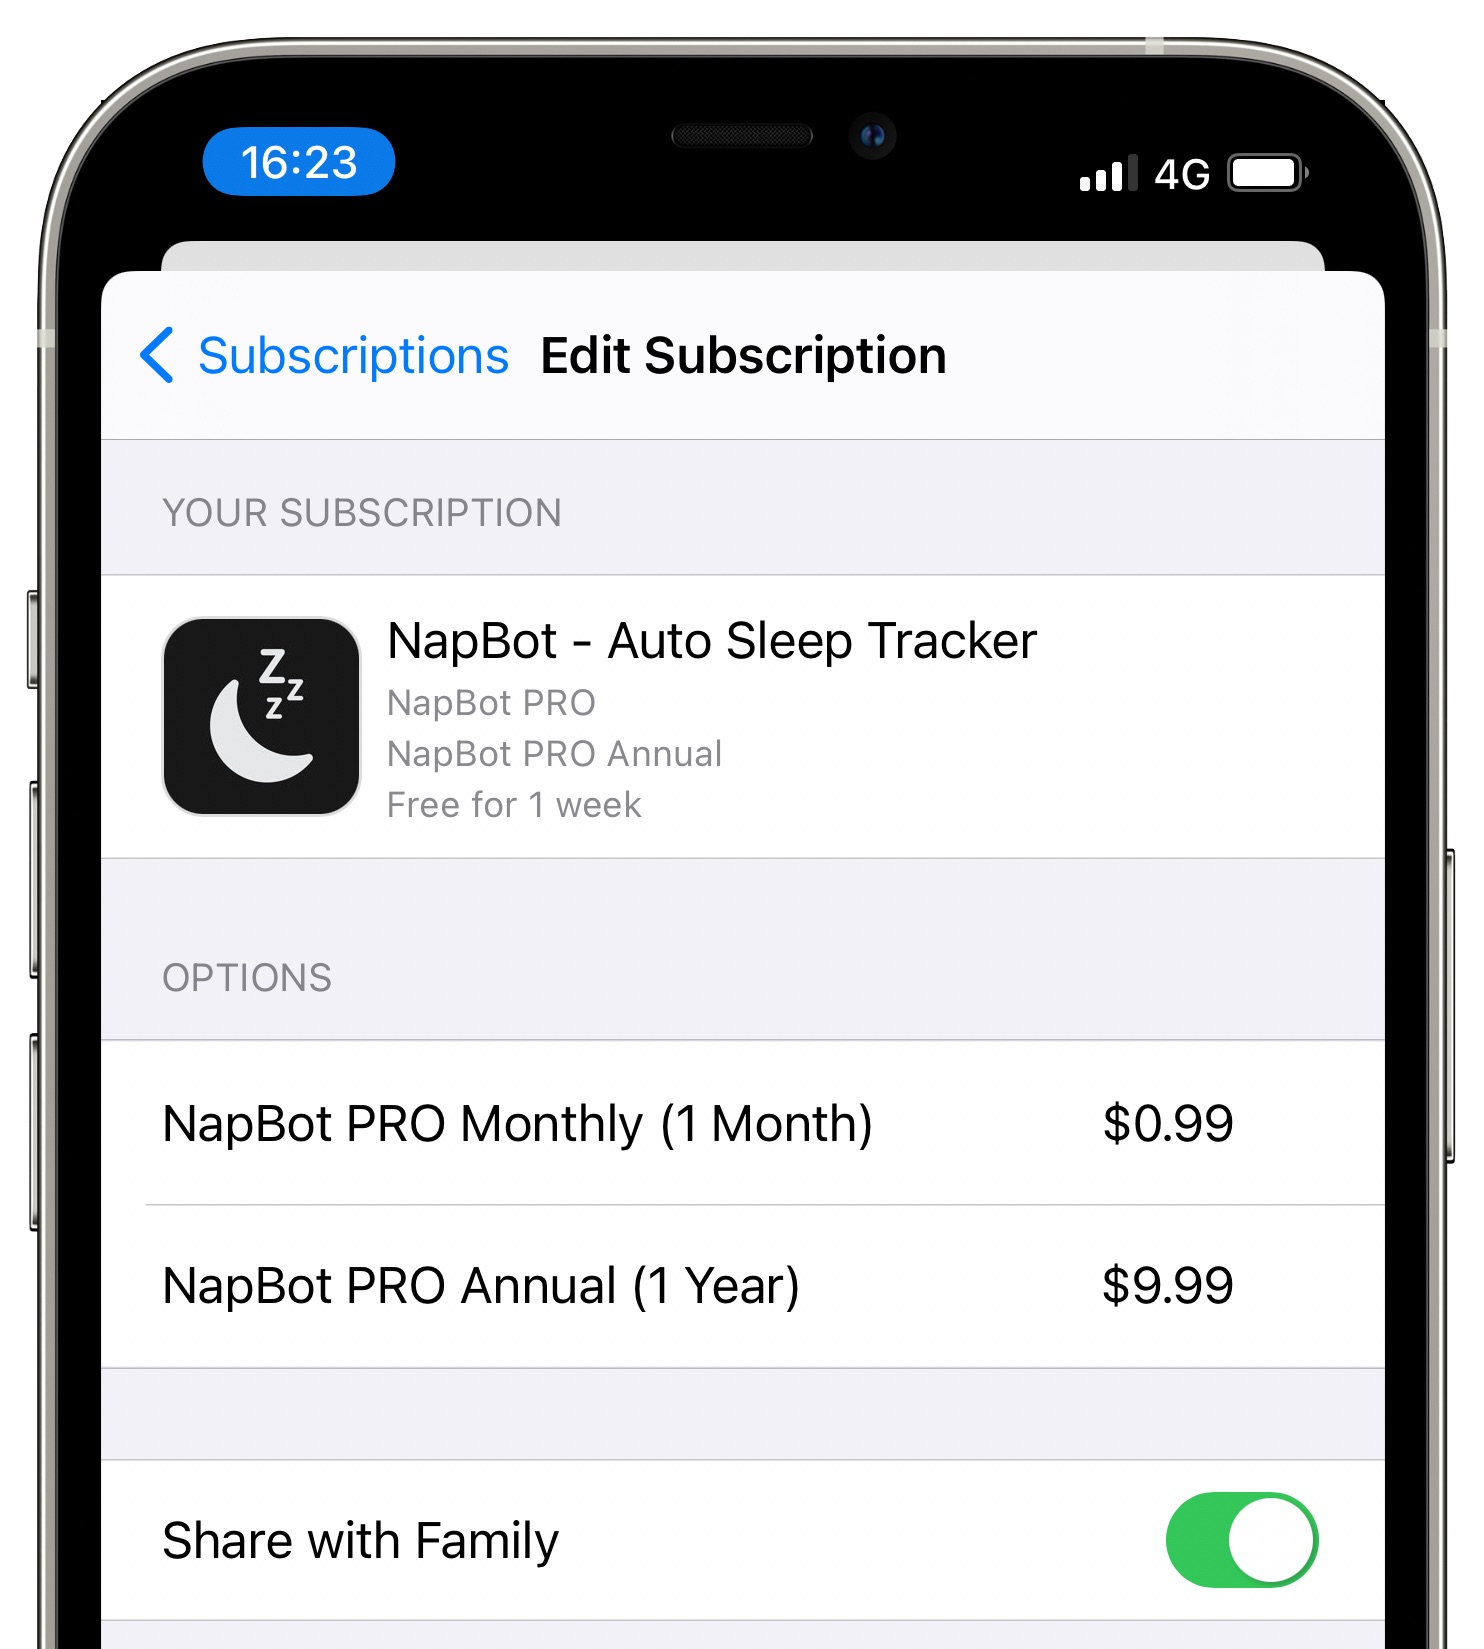 Condividi abbonamenti - NapBot per iPhone con l'opzione per condividere l'abbonamento con la famiglia abilitata